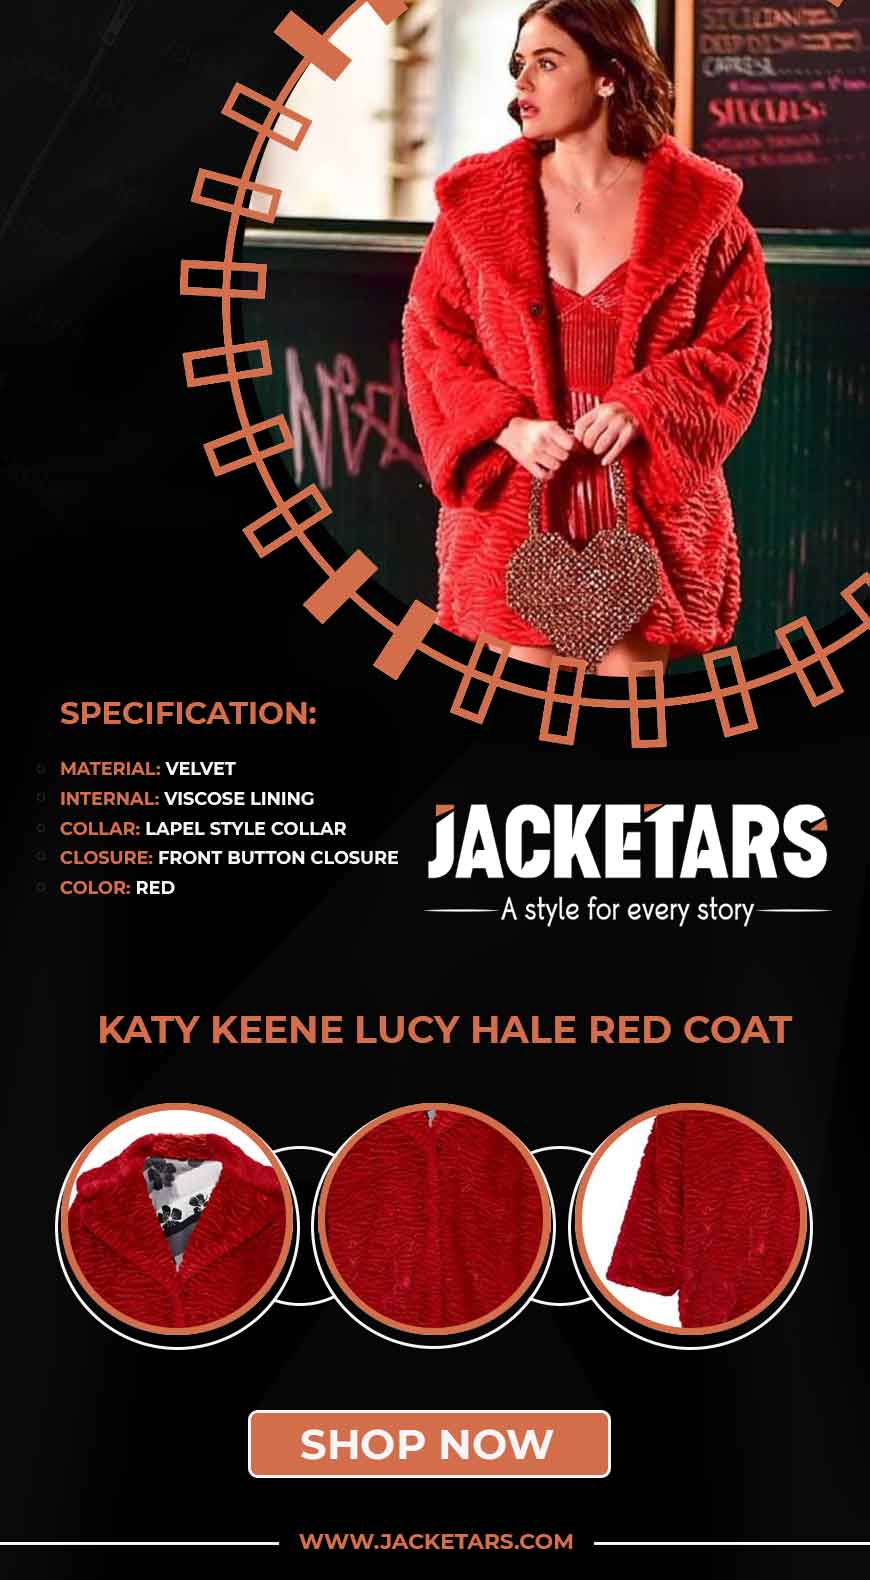 Katy Keene Lucy Hale Red Coat Info